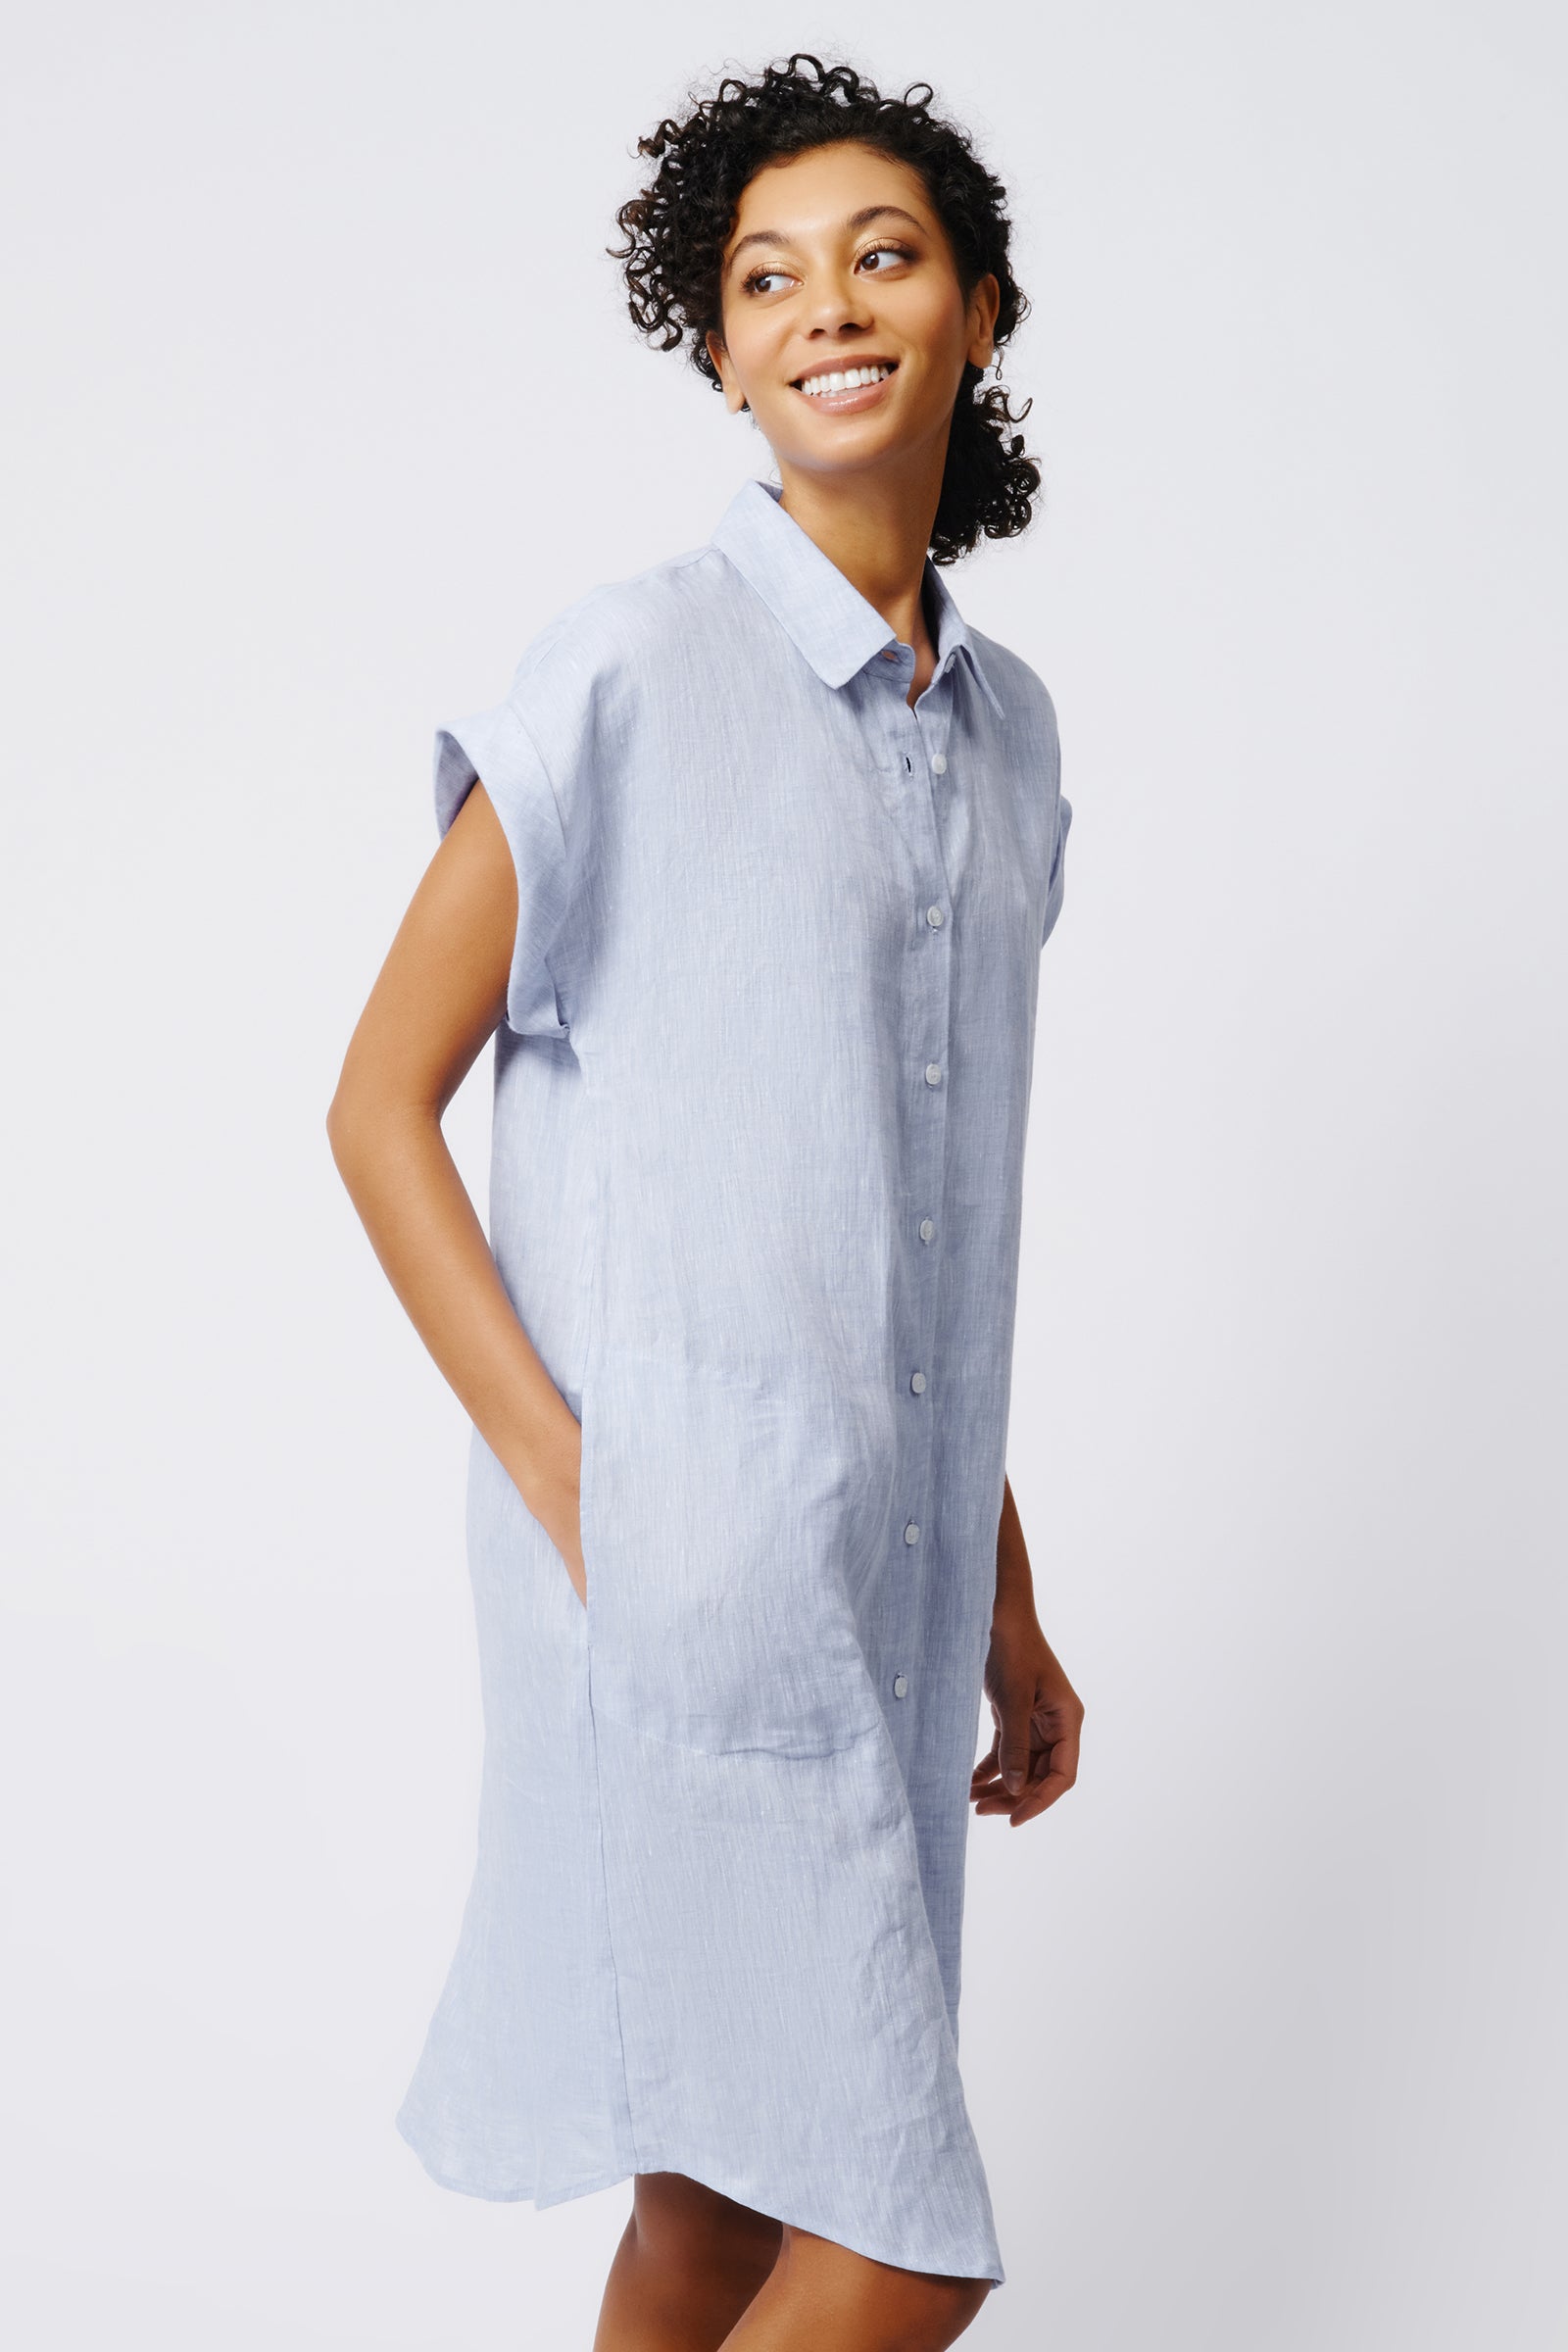 Kal Rieman Hedy Cuffed Cap Sleeve Shirt Dress in Blue Linen on Model Side View Crop